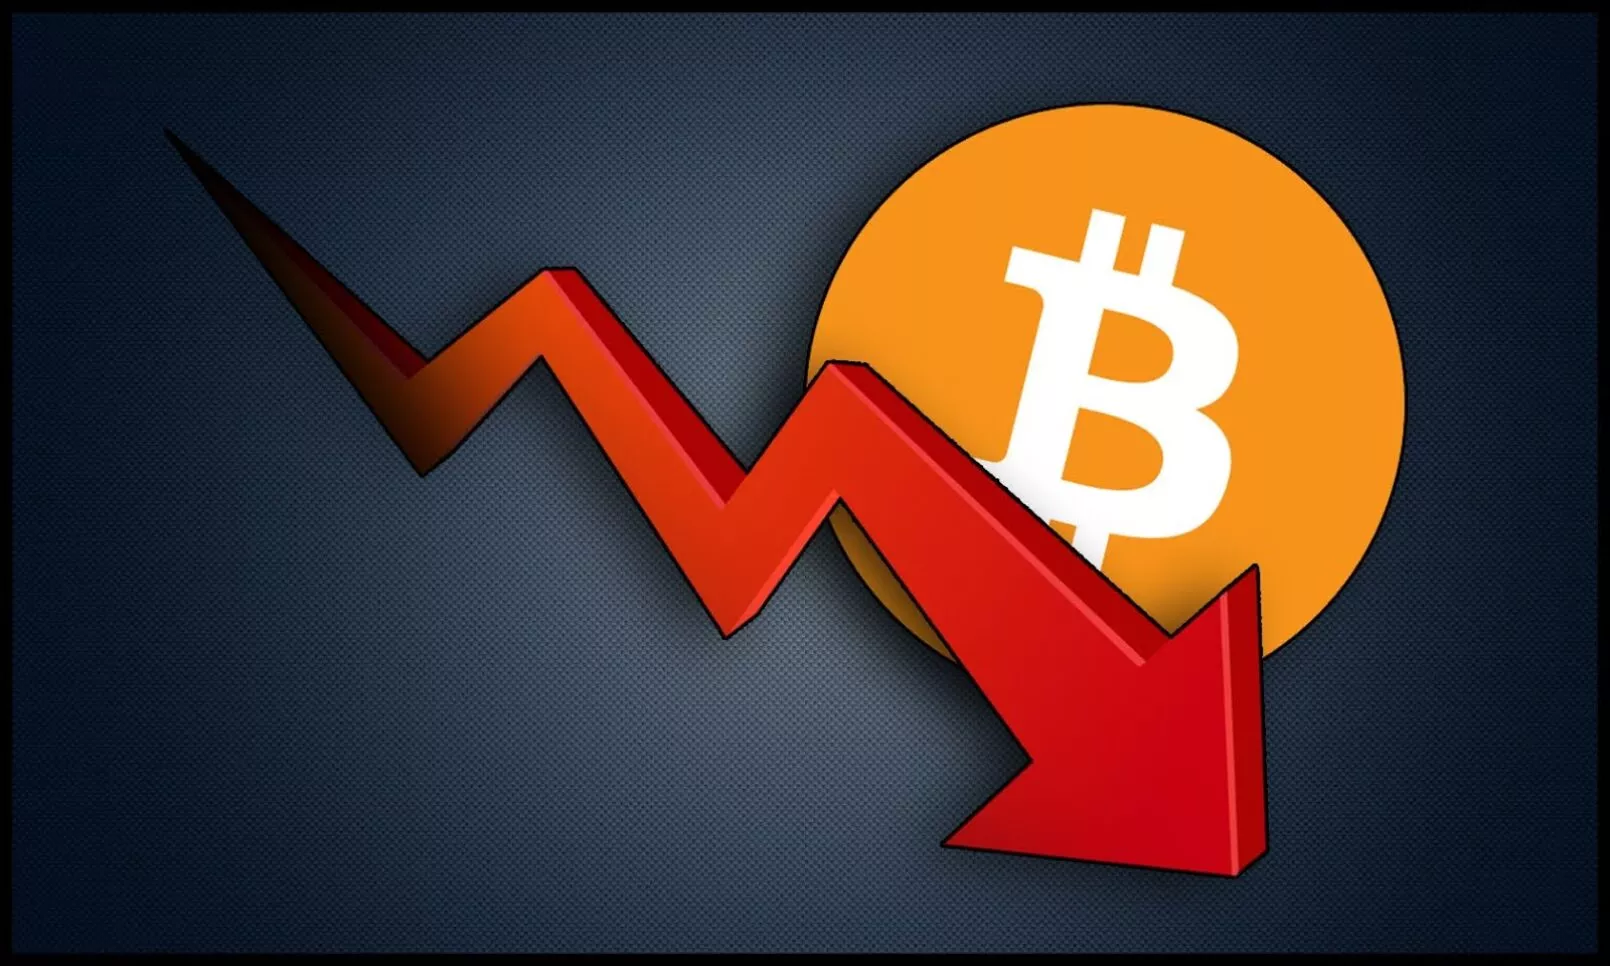 Mike Novogratz prognostiziert gigantische Korrektur von Bitcoin auf $50.000